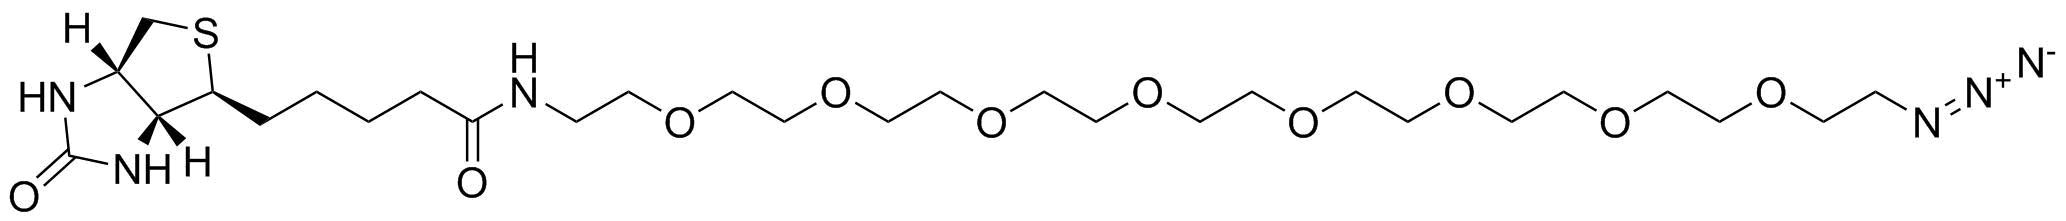 Biotin-PEG8-azide